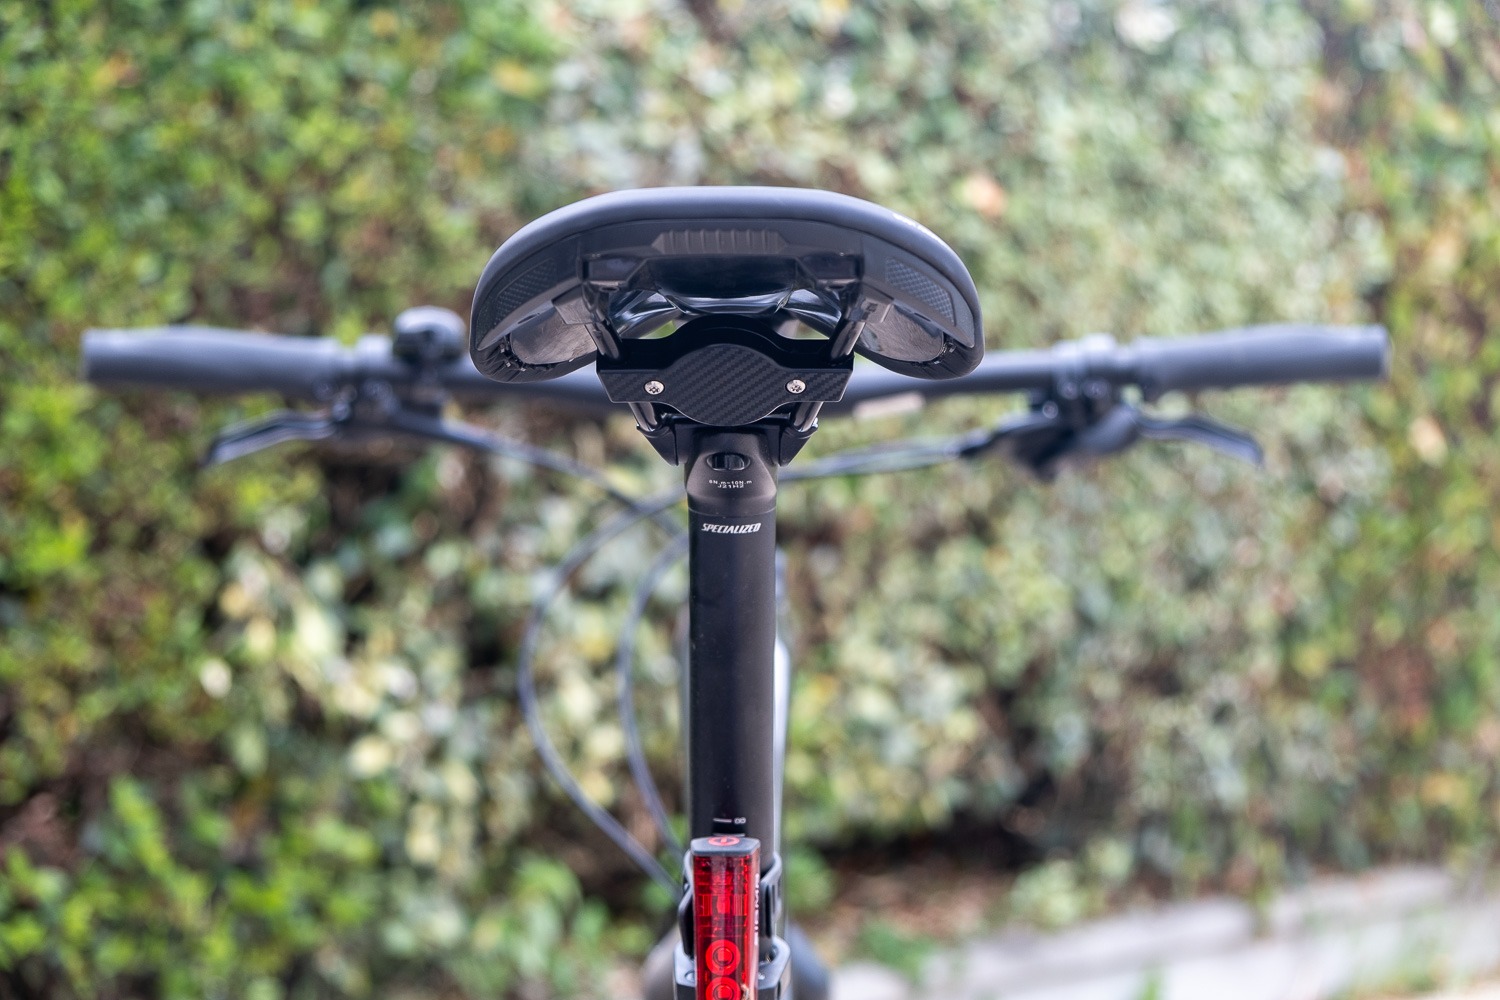 Créer un support AirTag Apple pour vélo, Témoignage client